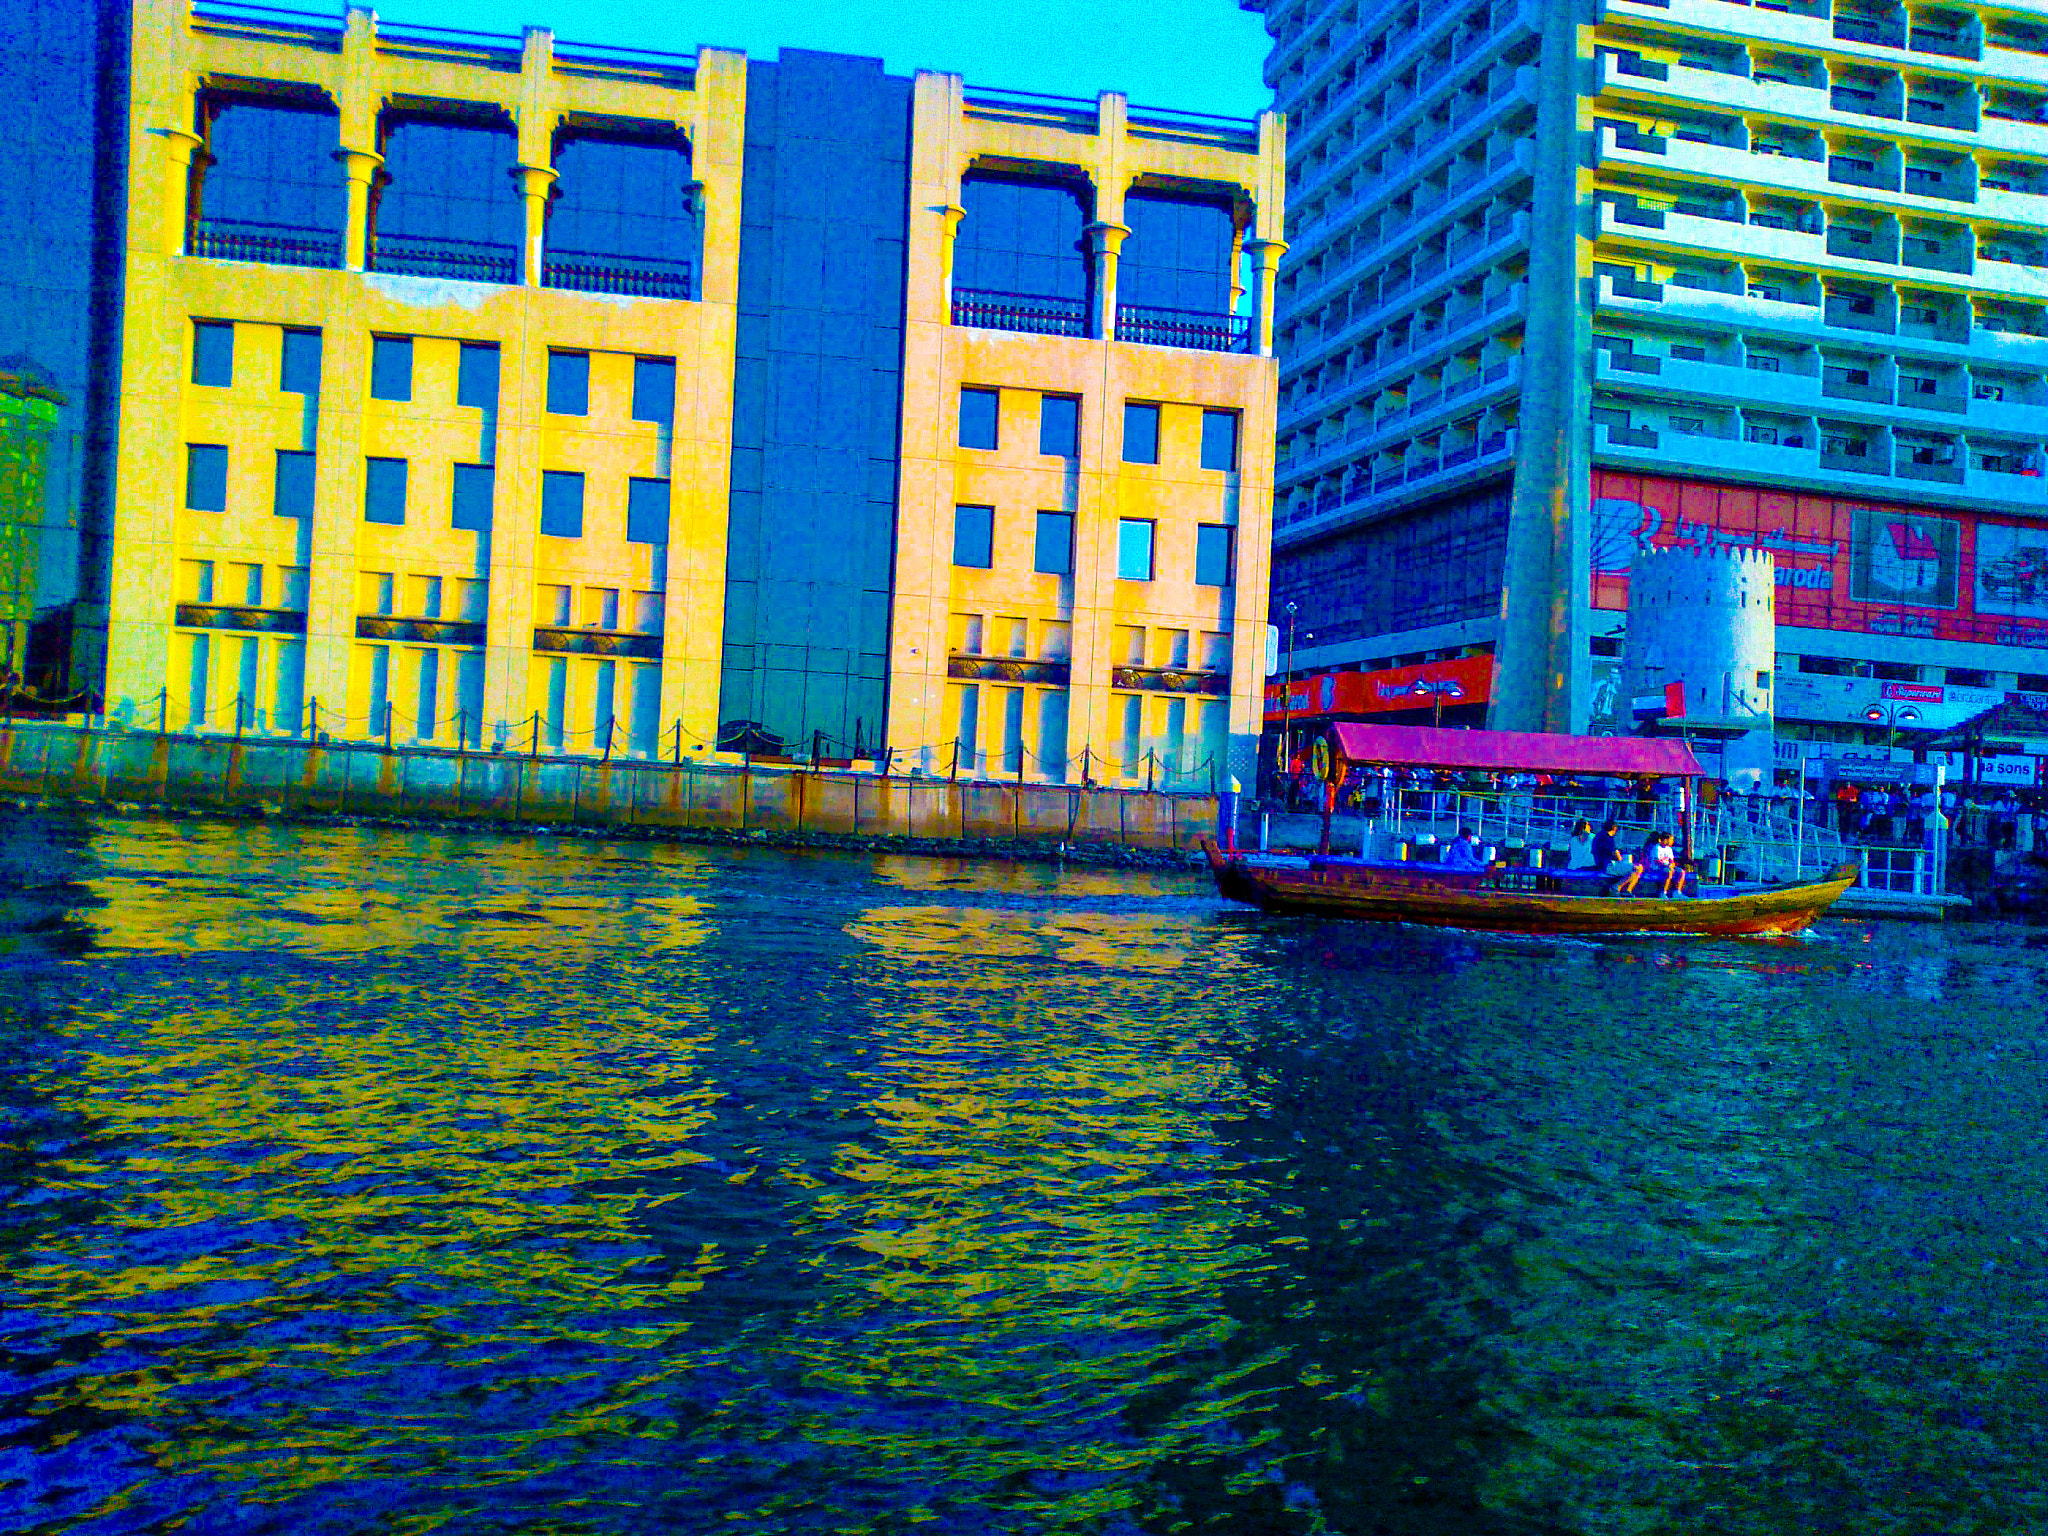 Nokia E5-00 sample photo. Dubai deira city photography